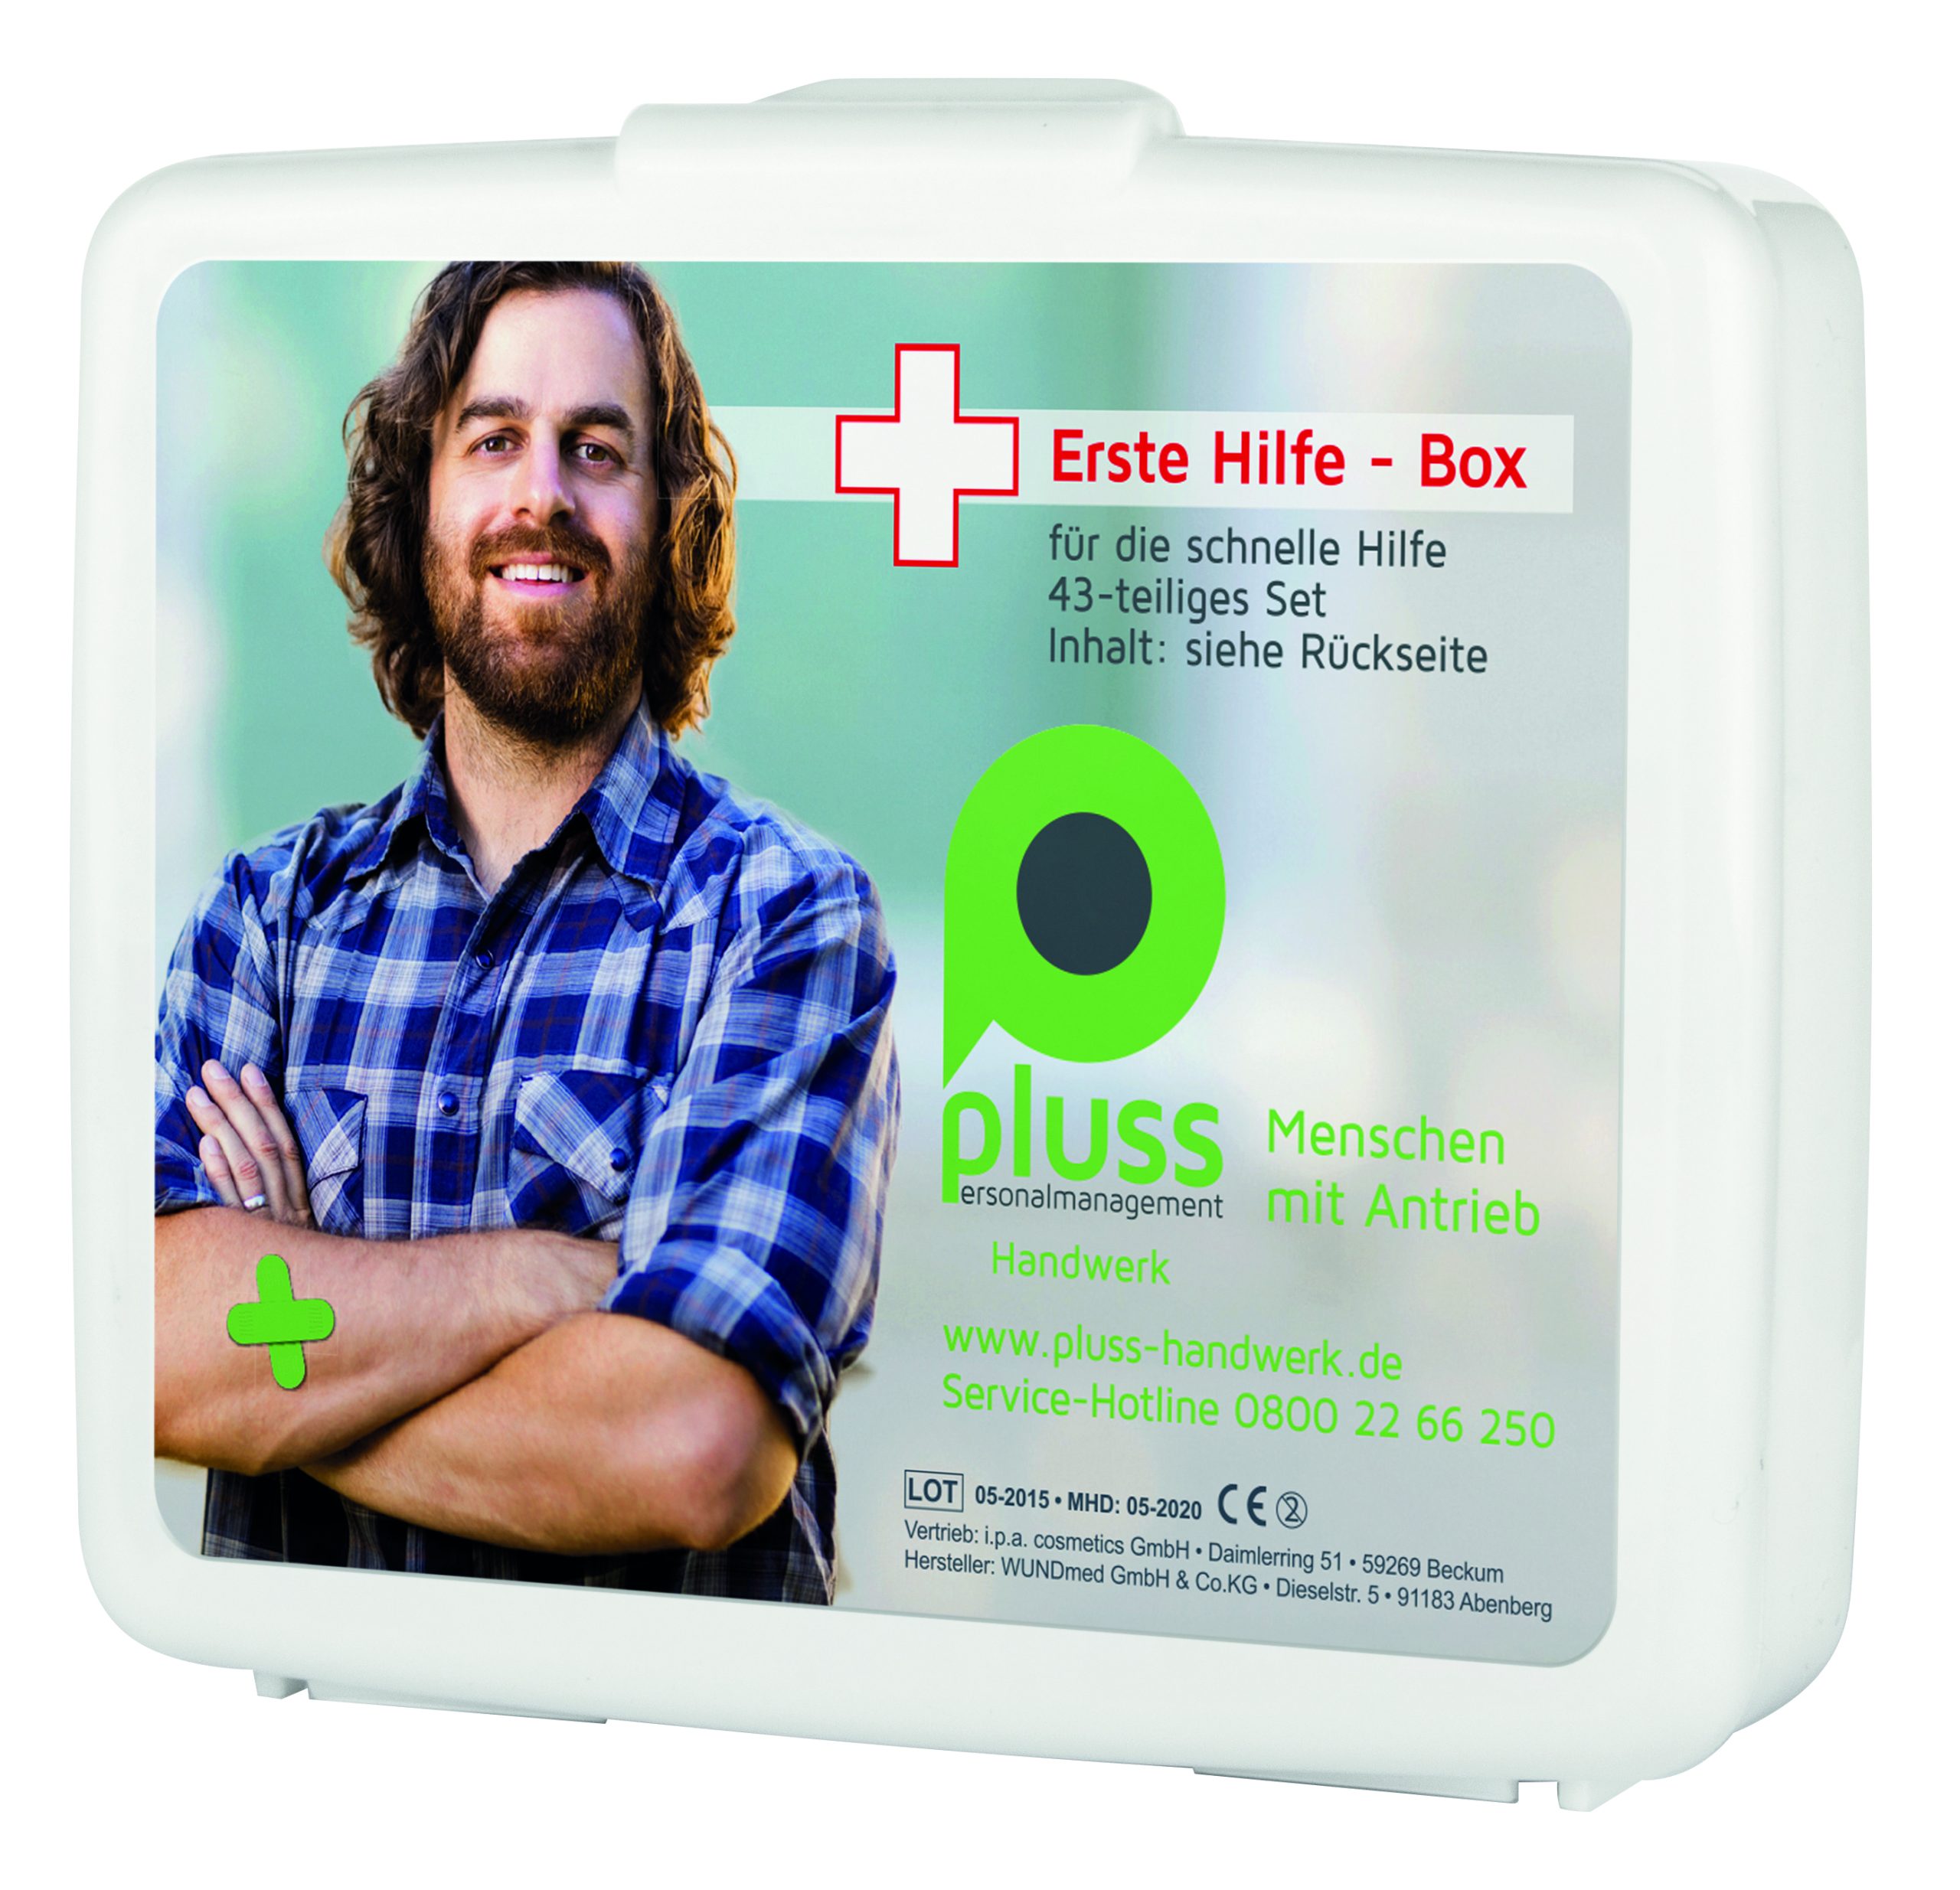 erste-hilfe-box-first-aid-box